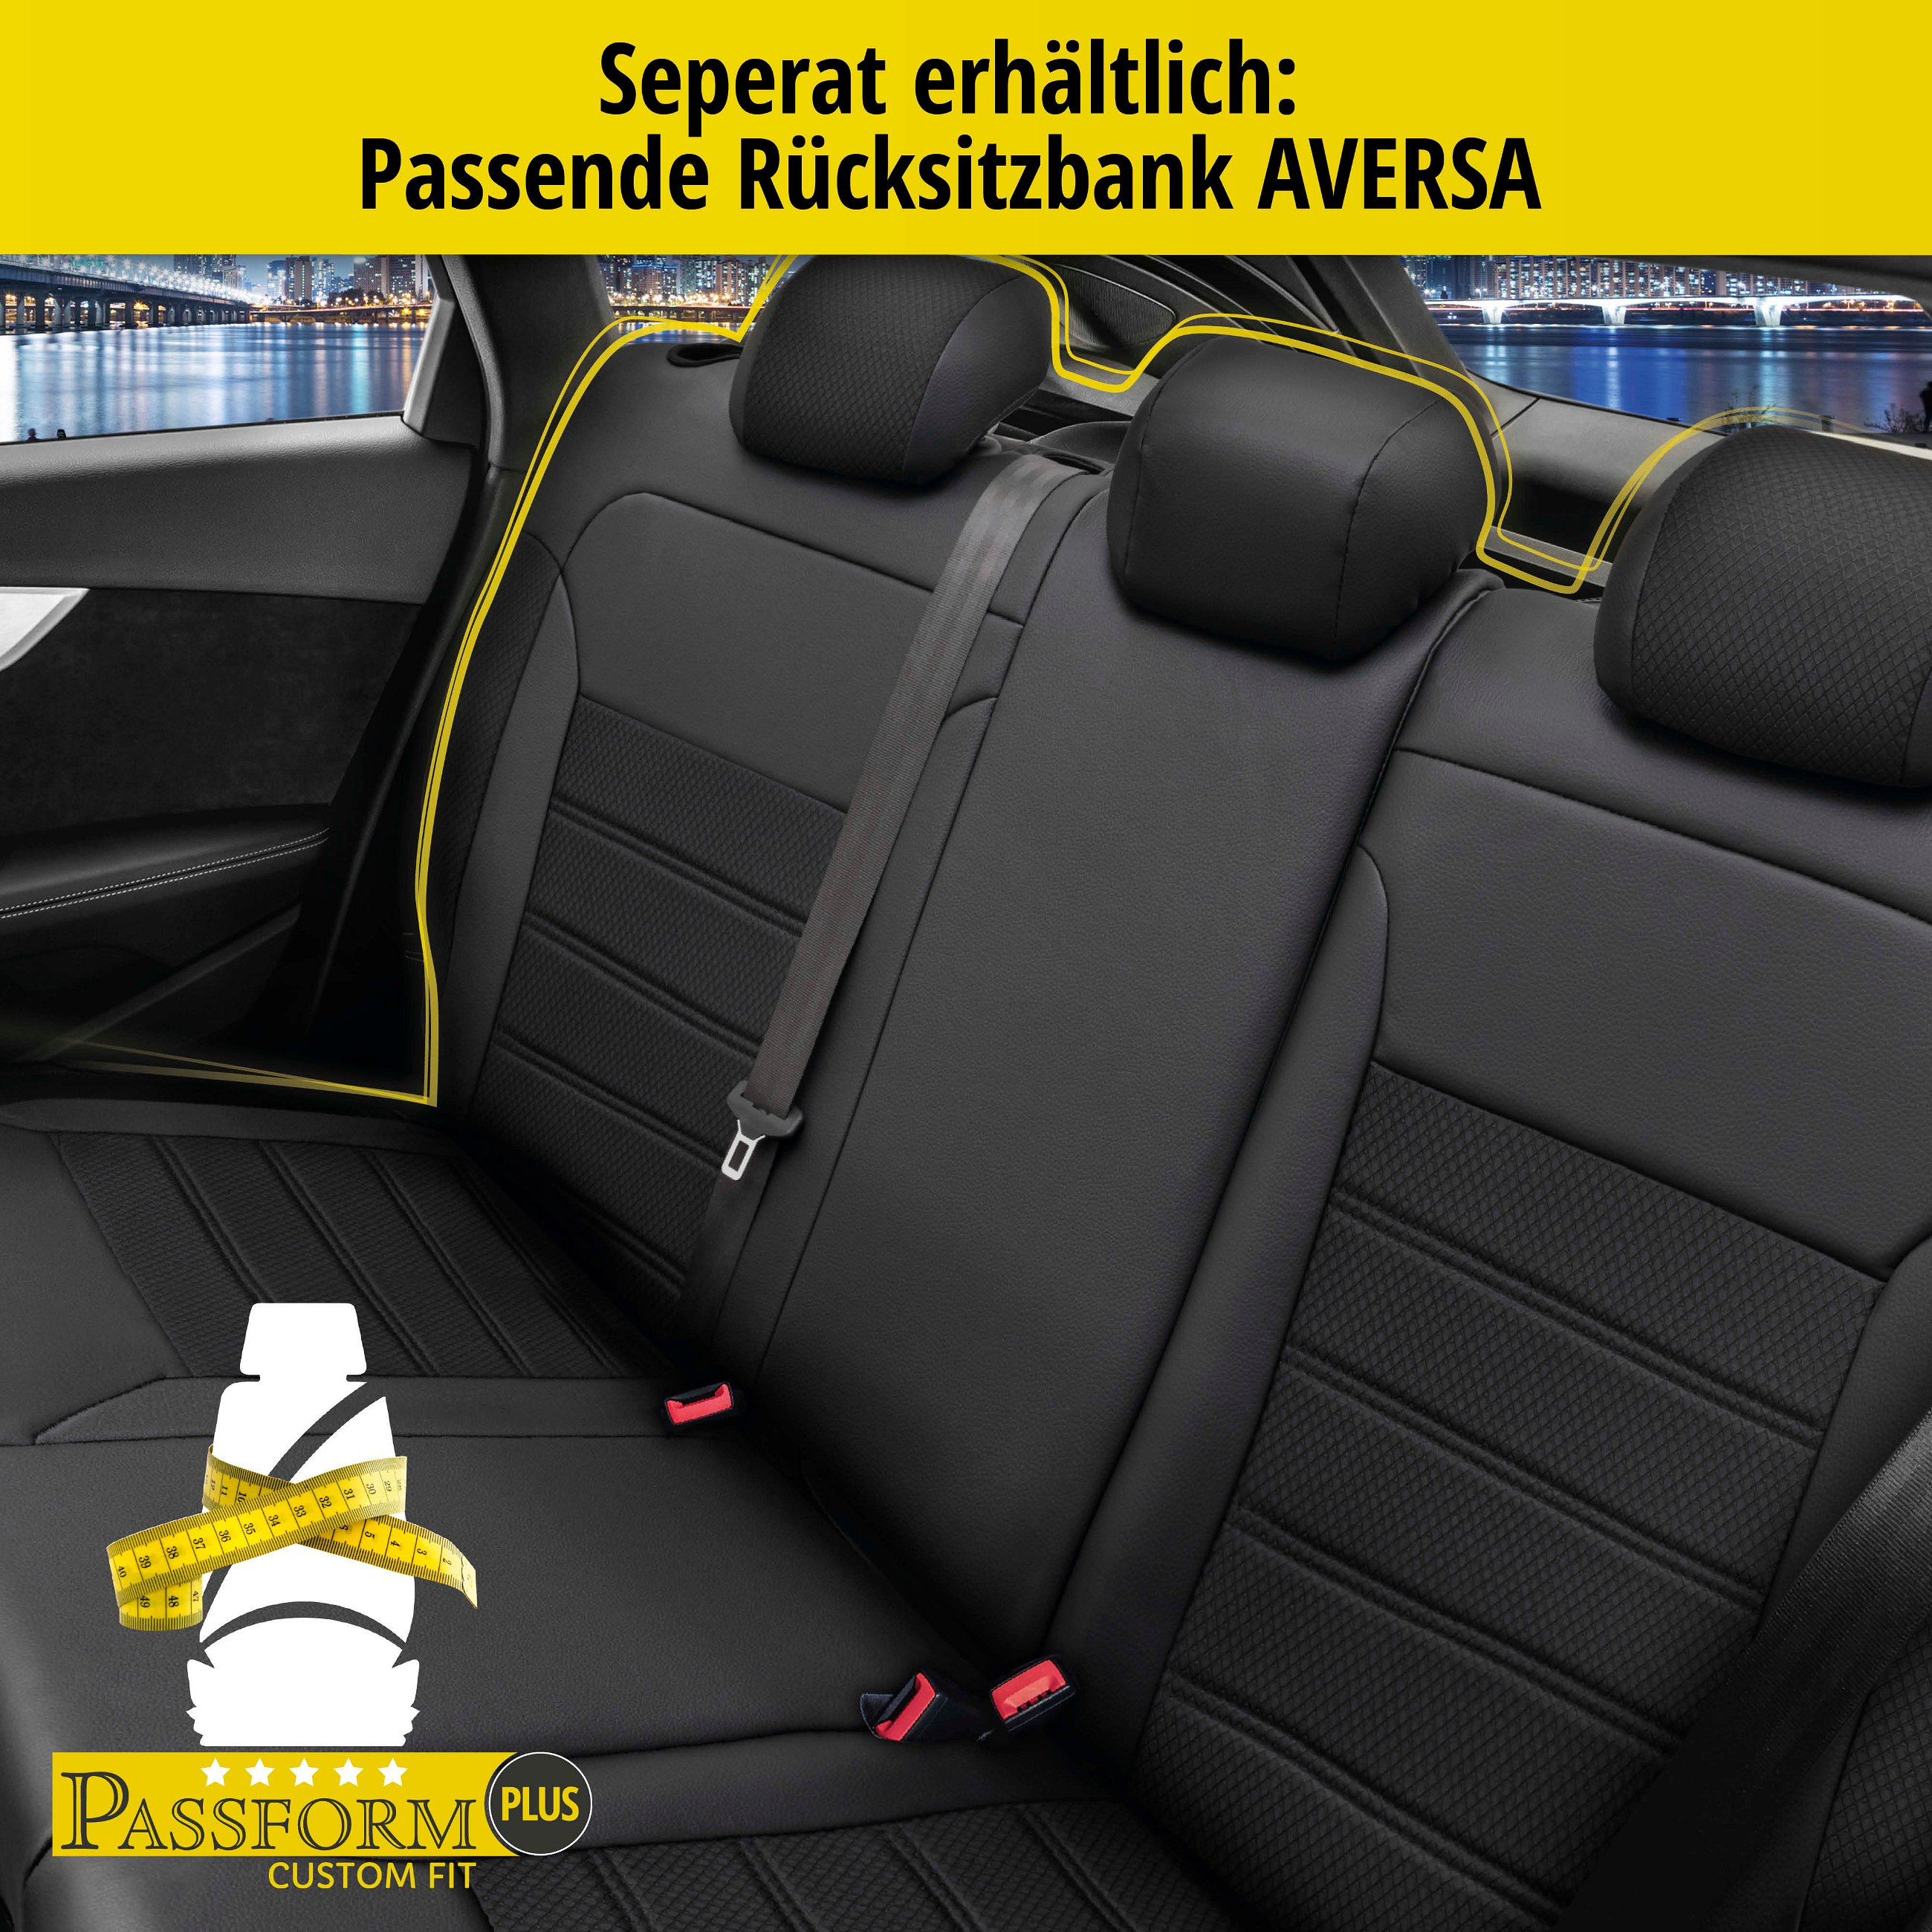 Passform Sitzbezug Aversa für Dacia Duster 10/2017-Heute, 2 Einzelsitzbezüge für Normalsitze